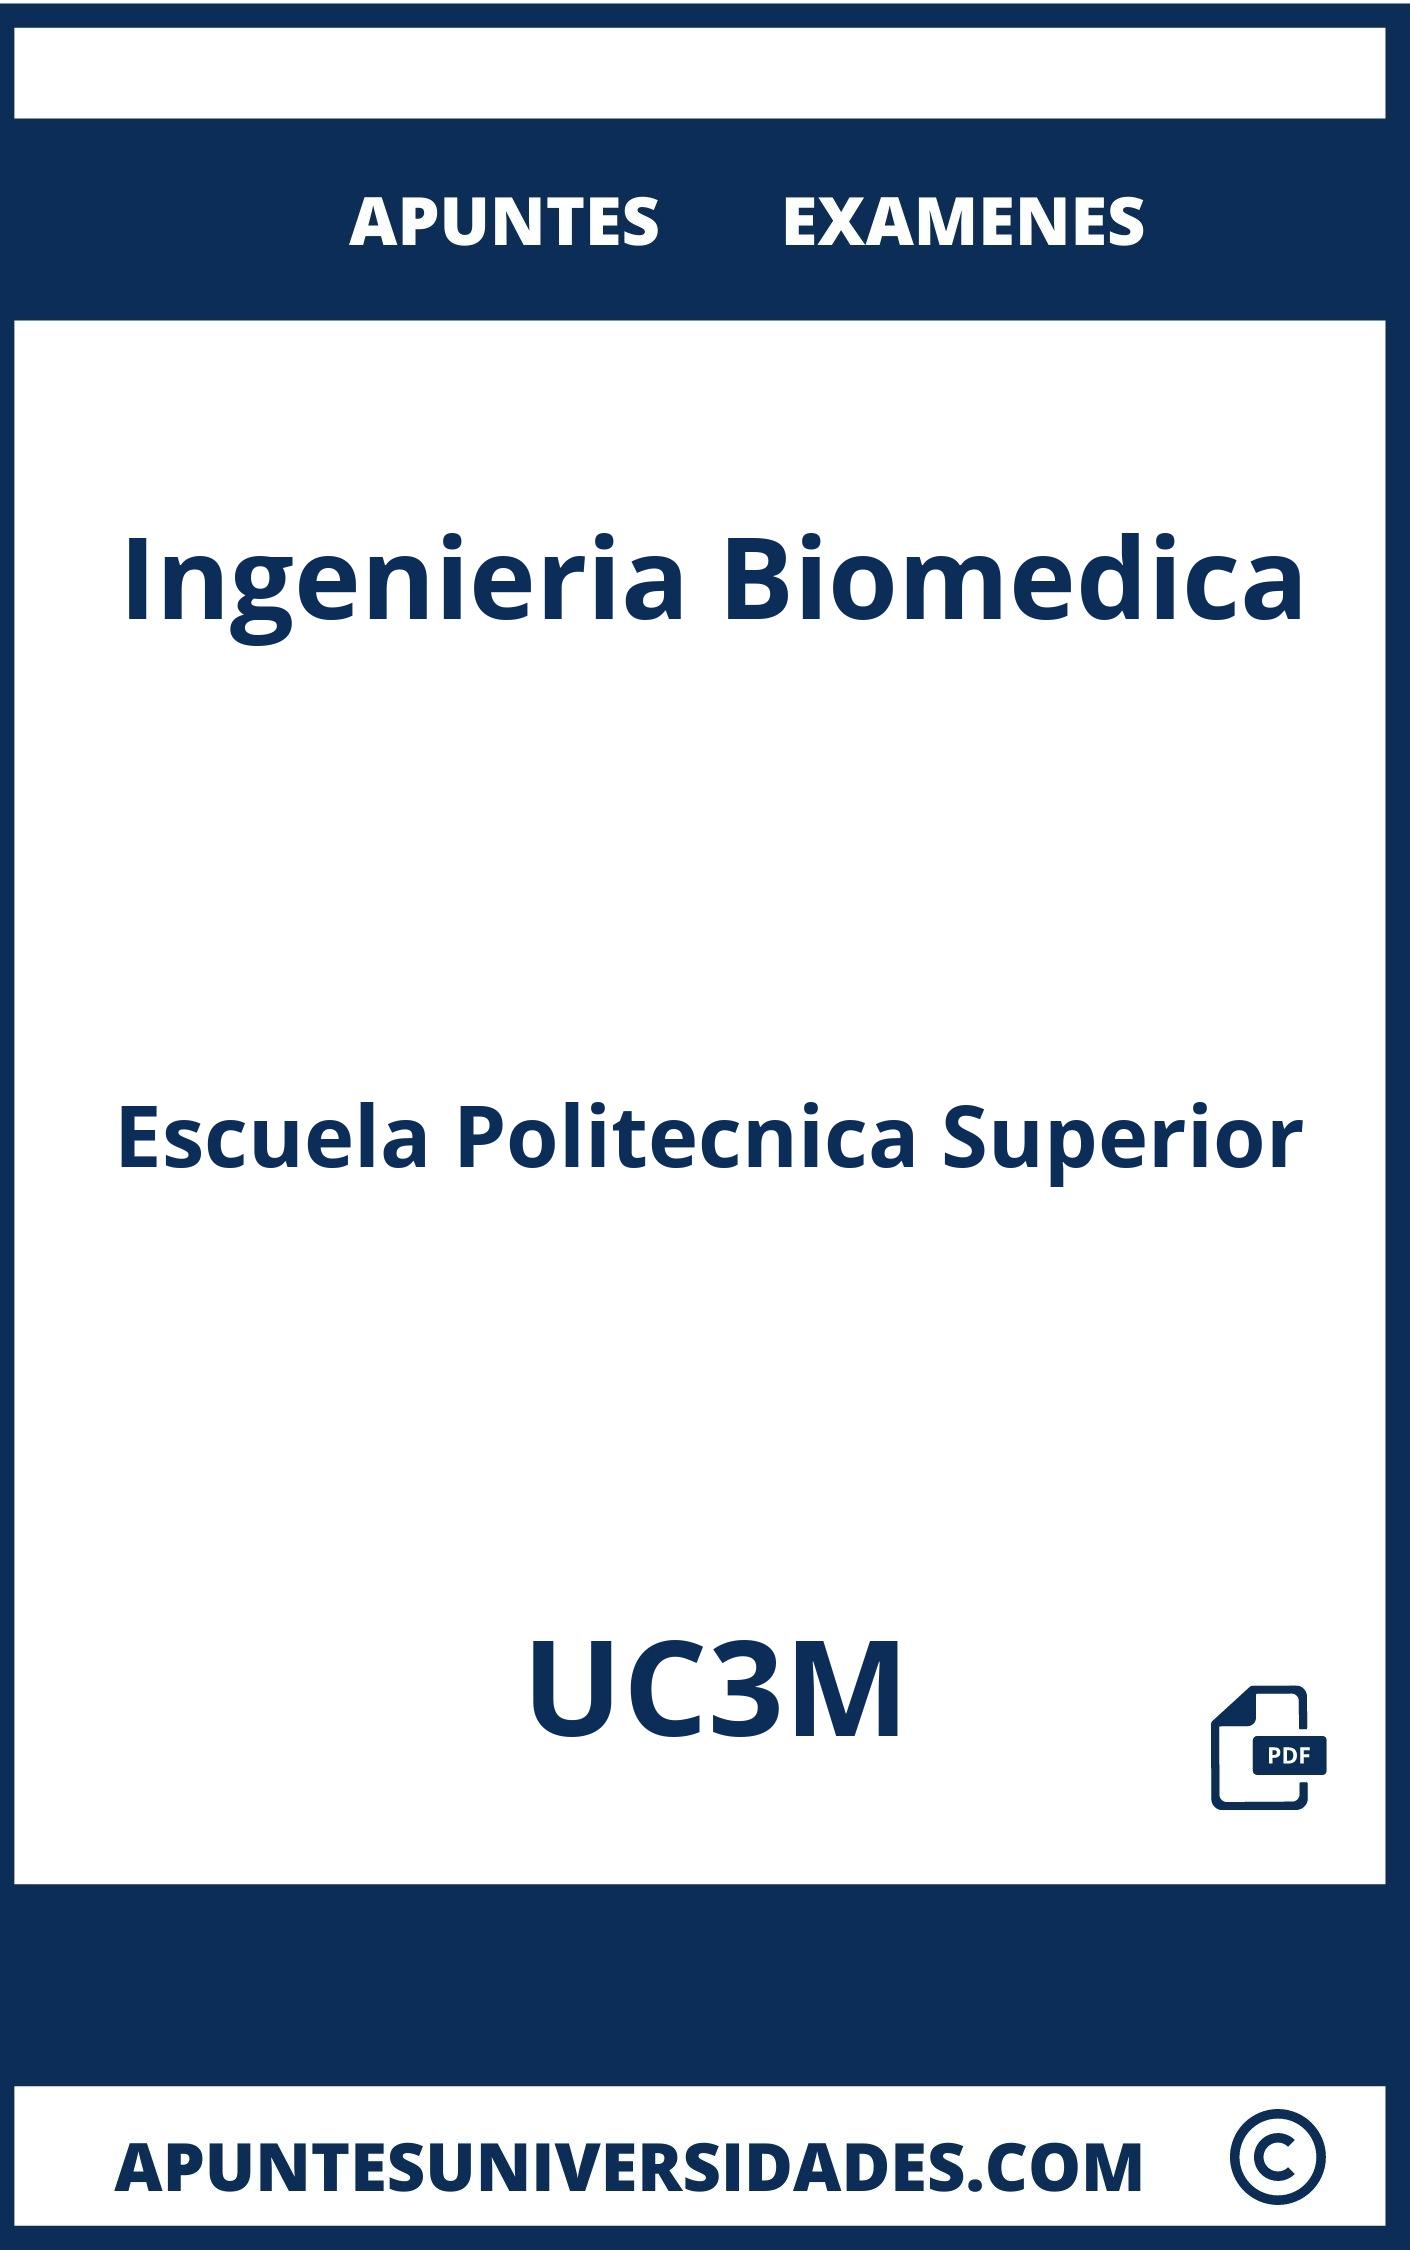 Apuntes y Examenes de Ingenieria Biomedica UC3M